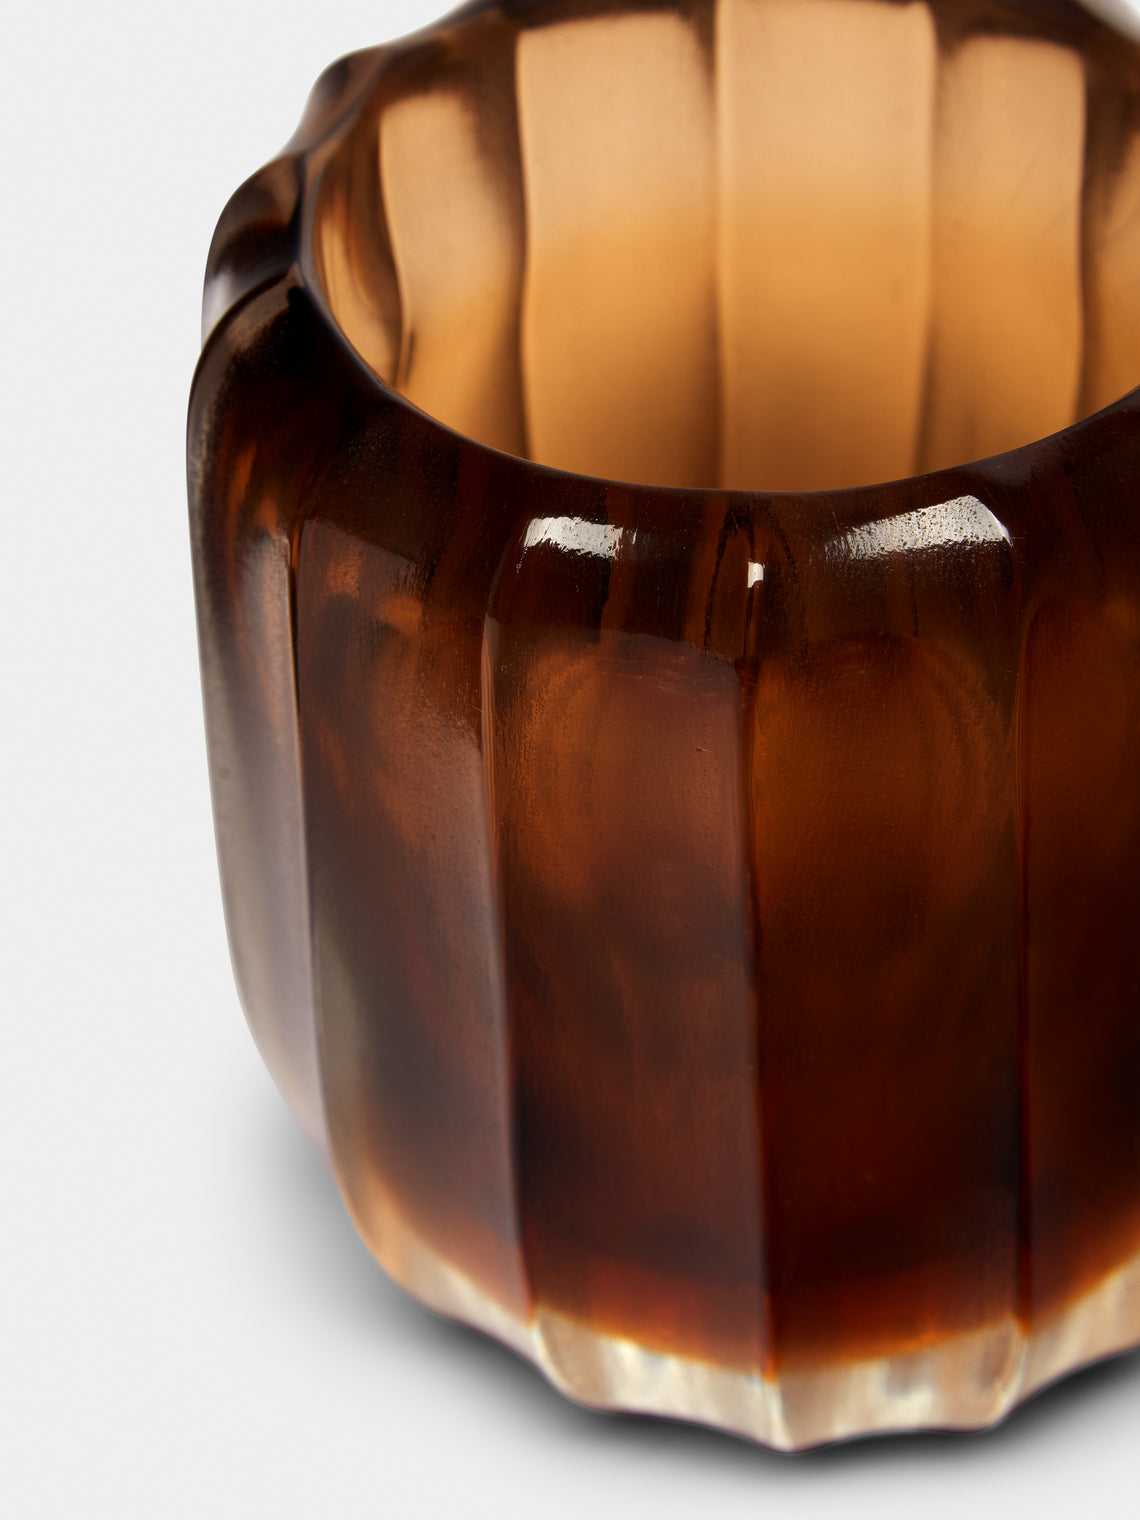 Micheluzzi Glass - Rullo Miele Hand-Blown Murano Glass Vase - Yellow - ABASK